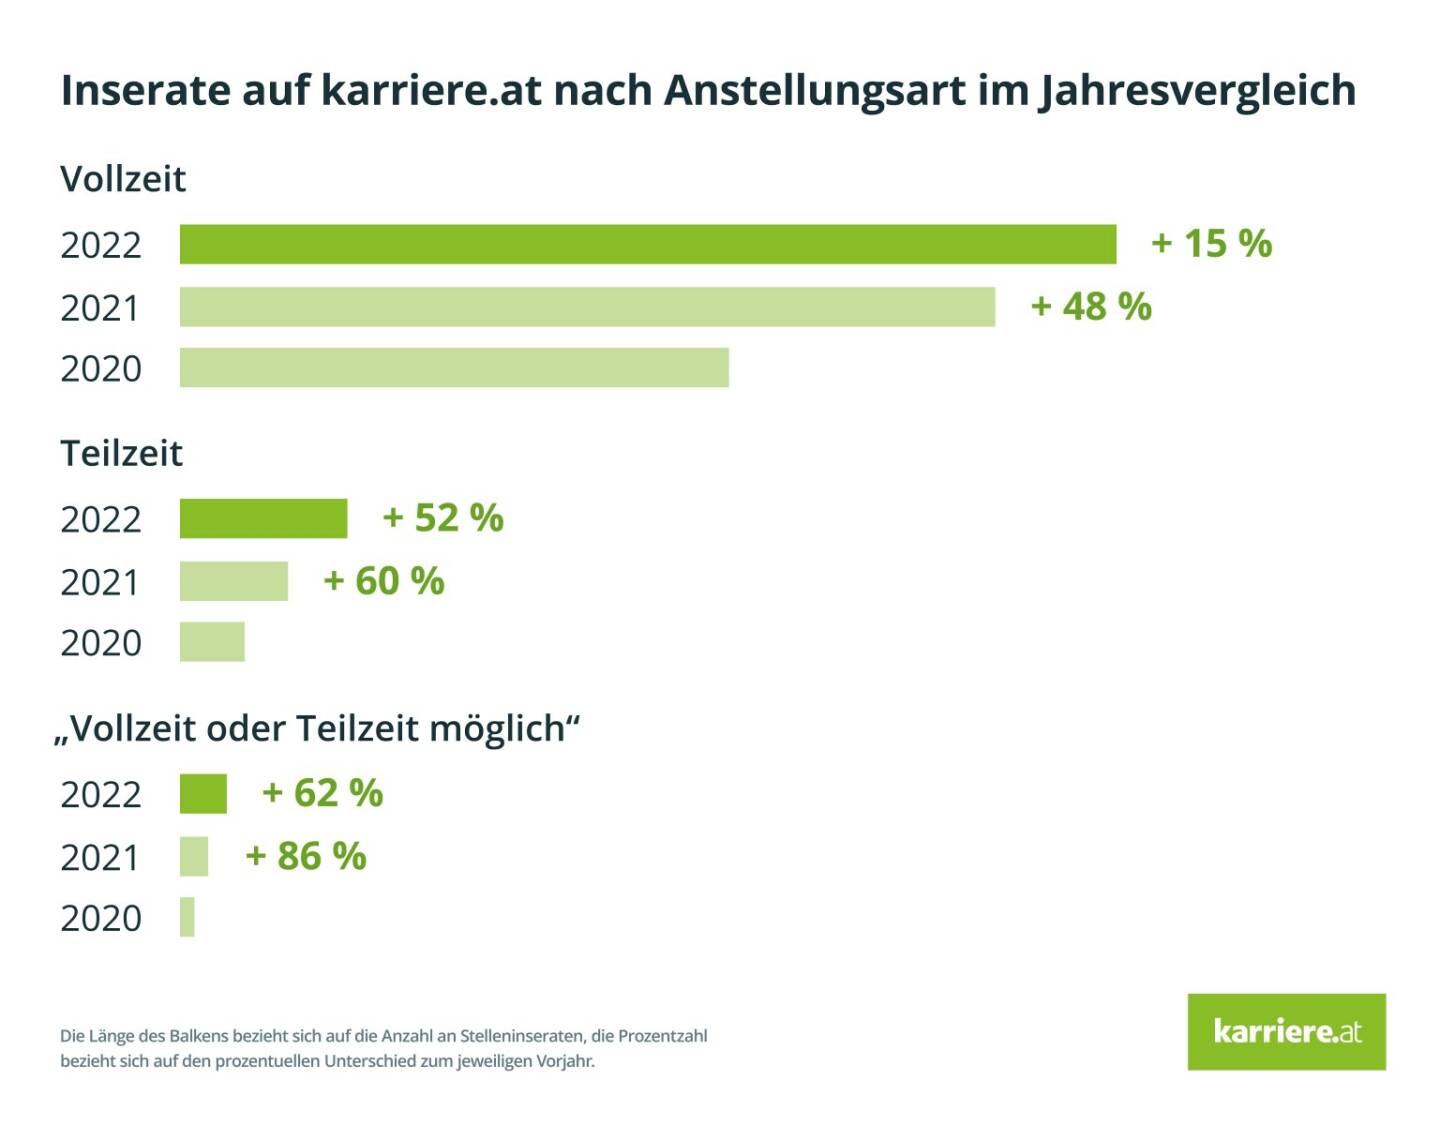 karriere.at GmbH: Arbeitsmarkt: Eindeutiger Trend zu Teilzeit in Stelleninseraten; Credit: karriere.at